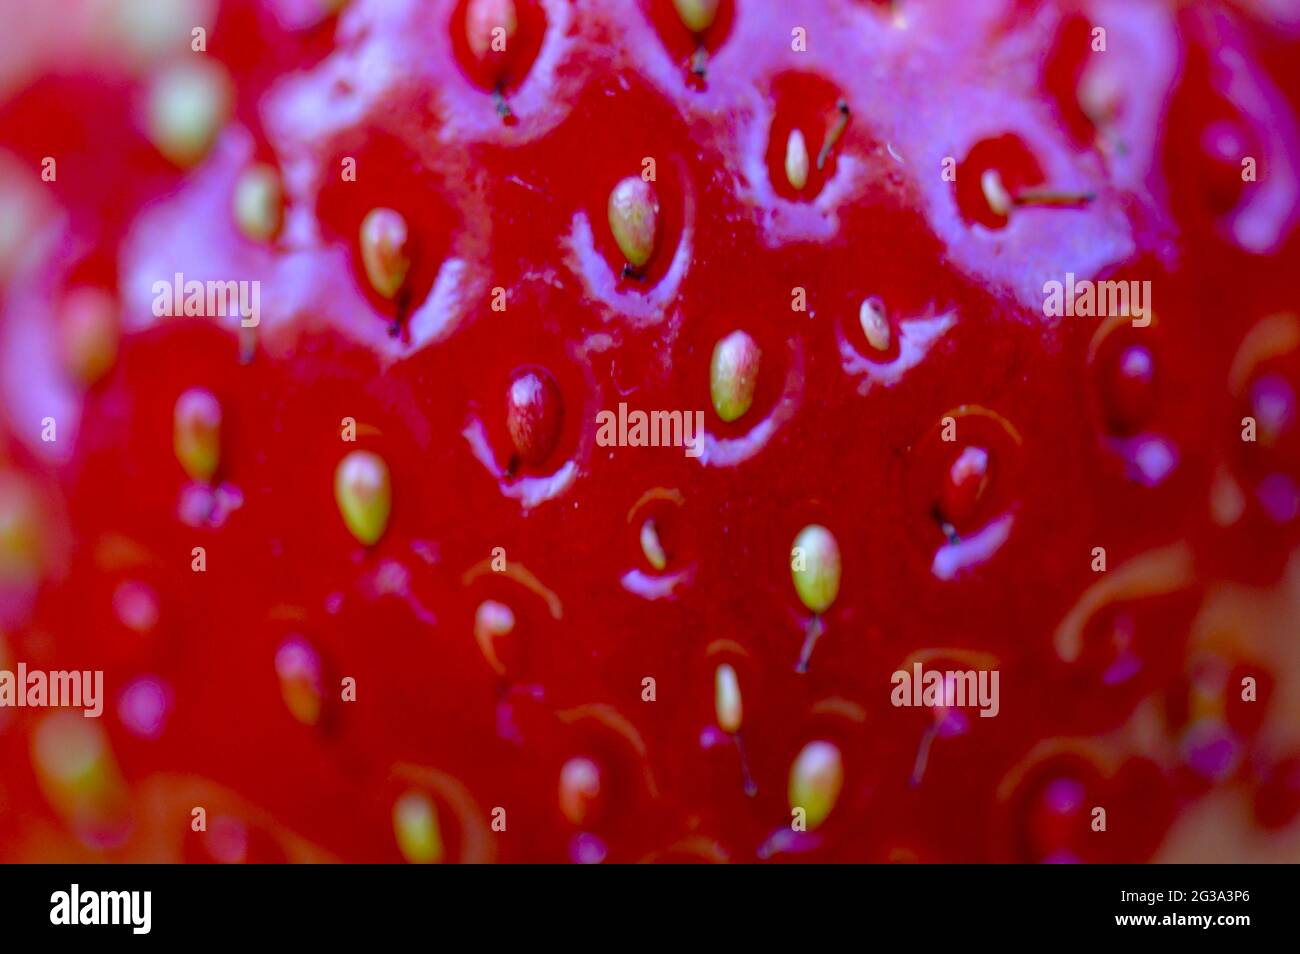 Nahaufnahme einer herrlichen roten frisch gepflückten Erdbeere aus dem eigenen Garten Foto Stock